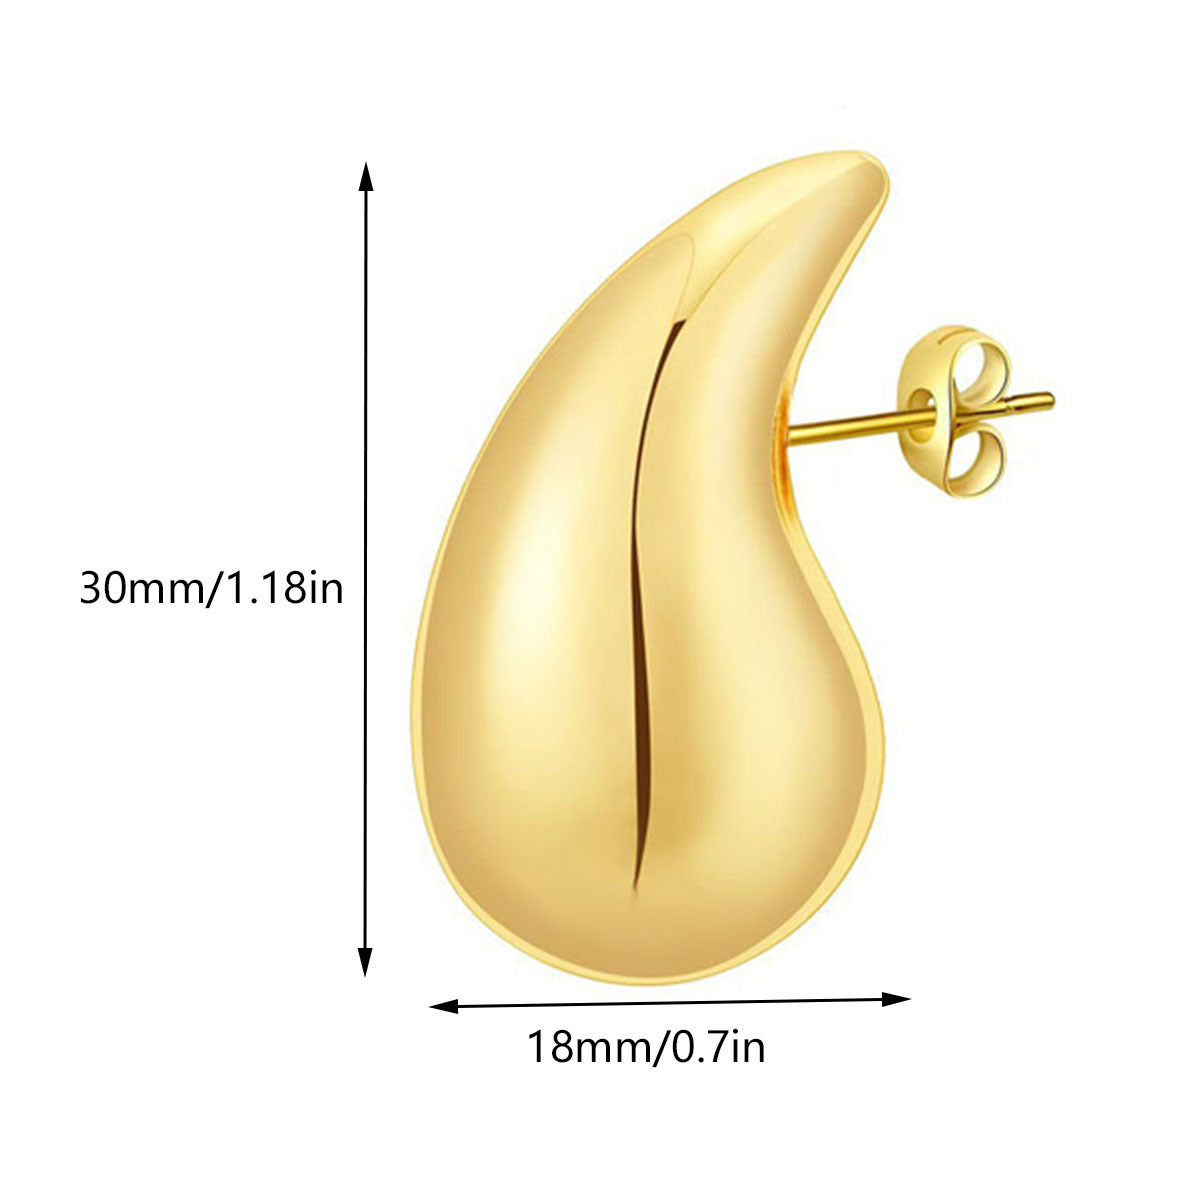 Bulk Chunky Gold Earrings Lightweight Waterdrop Hollow Open Hoops Hypoallergenic Gold Plated Earrings for Women Girls Wholesale